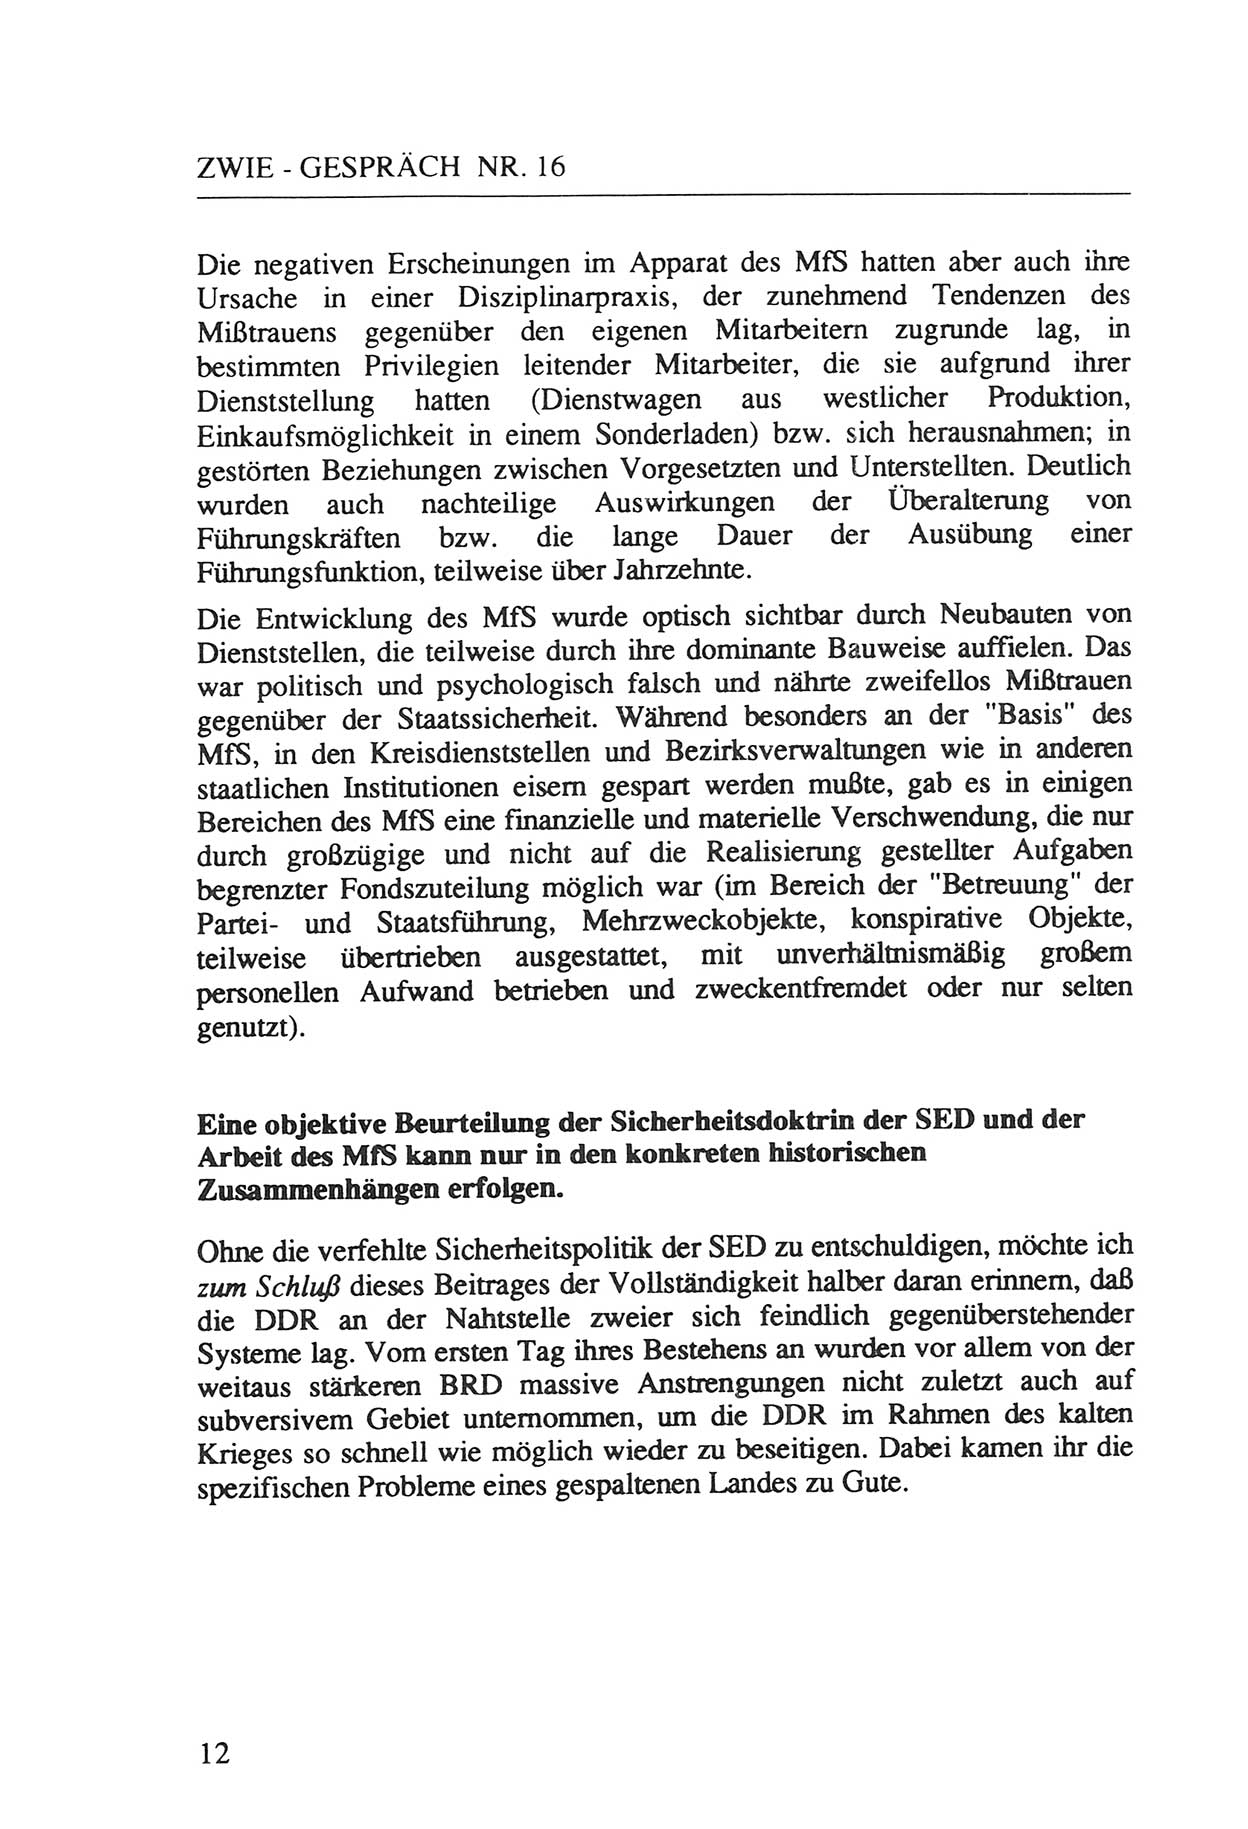 Zwie-Gespräch, Beiträge zur Aufarbeitung der Staatssicherheits-Vergangenheit [Deutsche Demokratische Republik (DDR)], Ausgabe Nr. 16, Berlin 1993, Seite 12 (Zwie-Gespr. Ausg. 16 1993, S. 12)